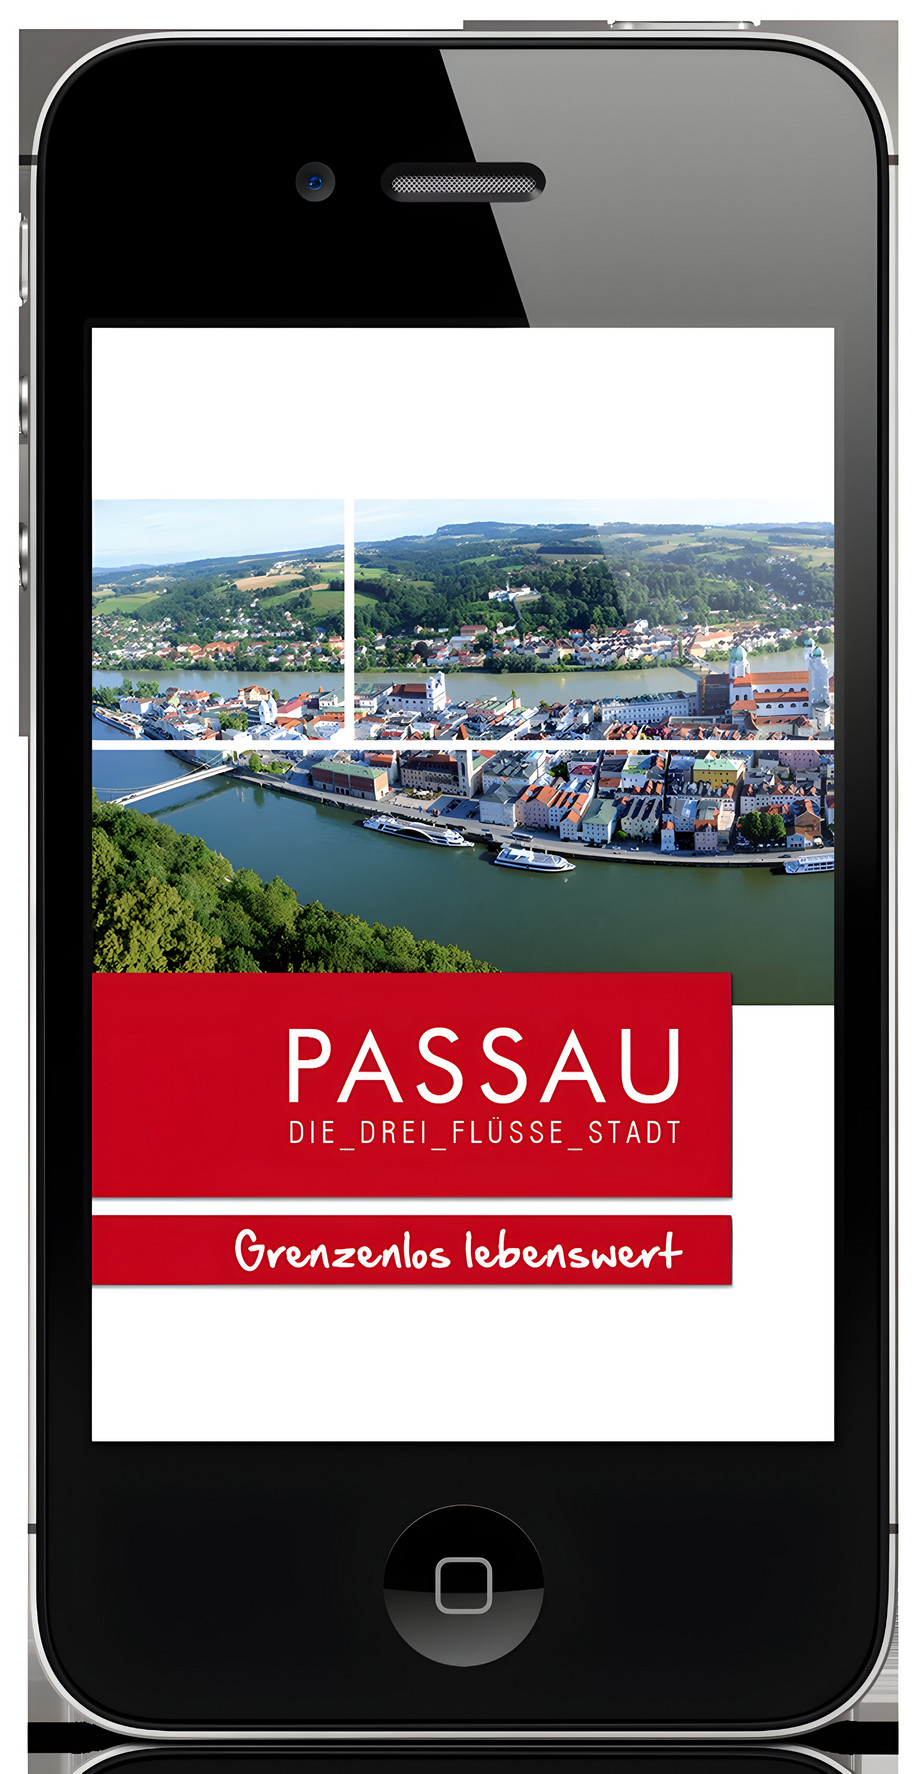 PassauApp: Mobile Anwendung für geo-basierte Informationen